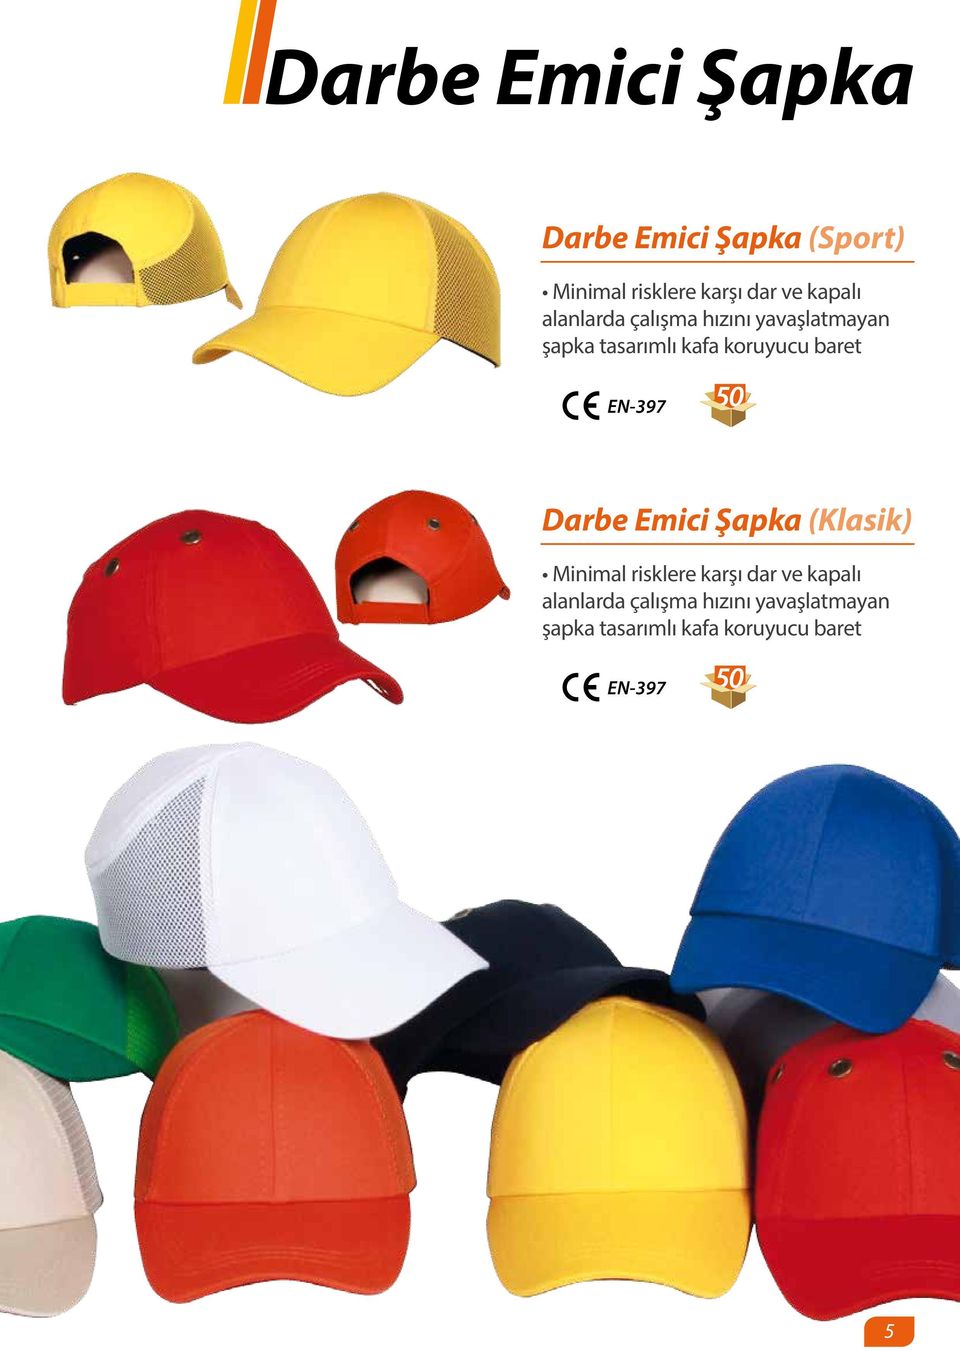 baret EN-397 50 Darbe Emici Şapka (Klasik) Minimal risklere karşı dar ve 